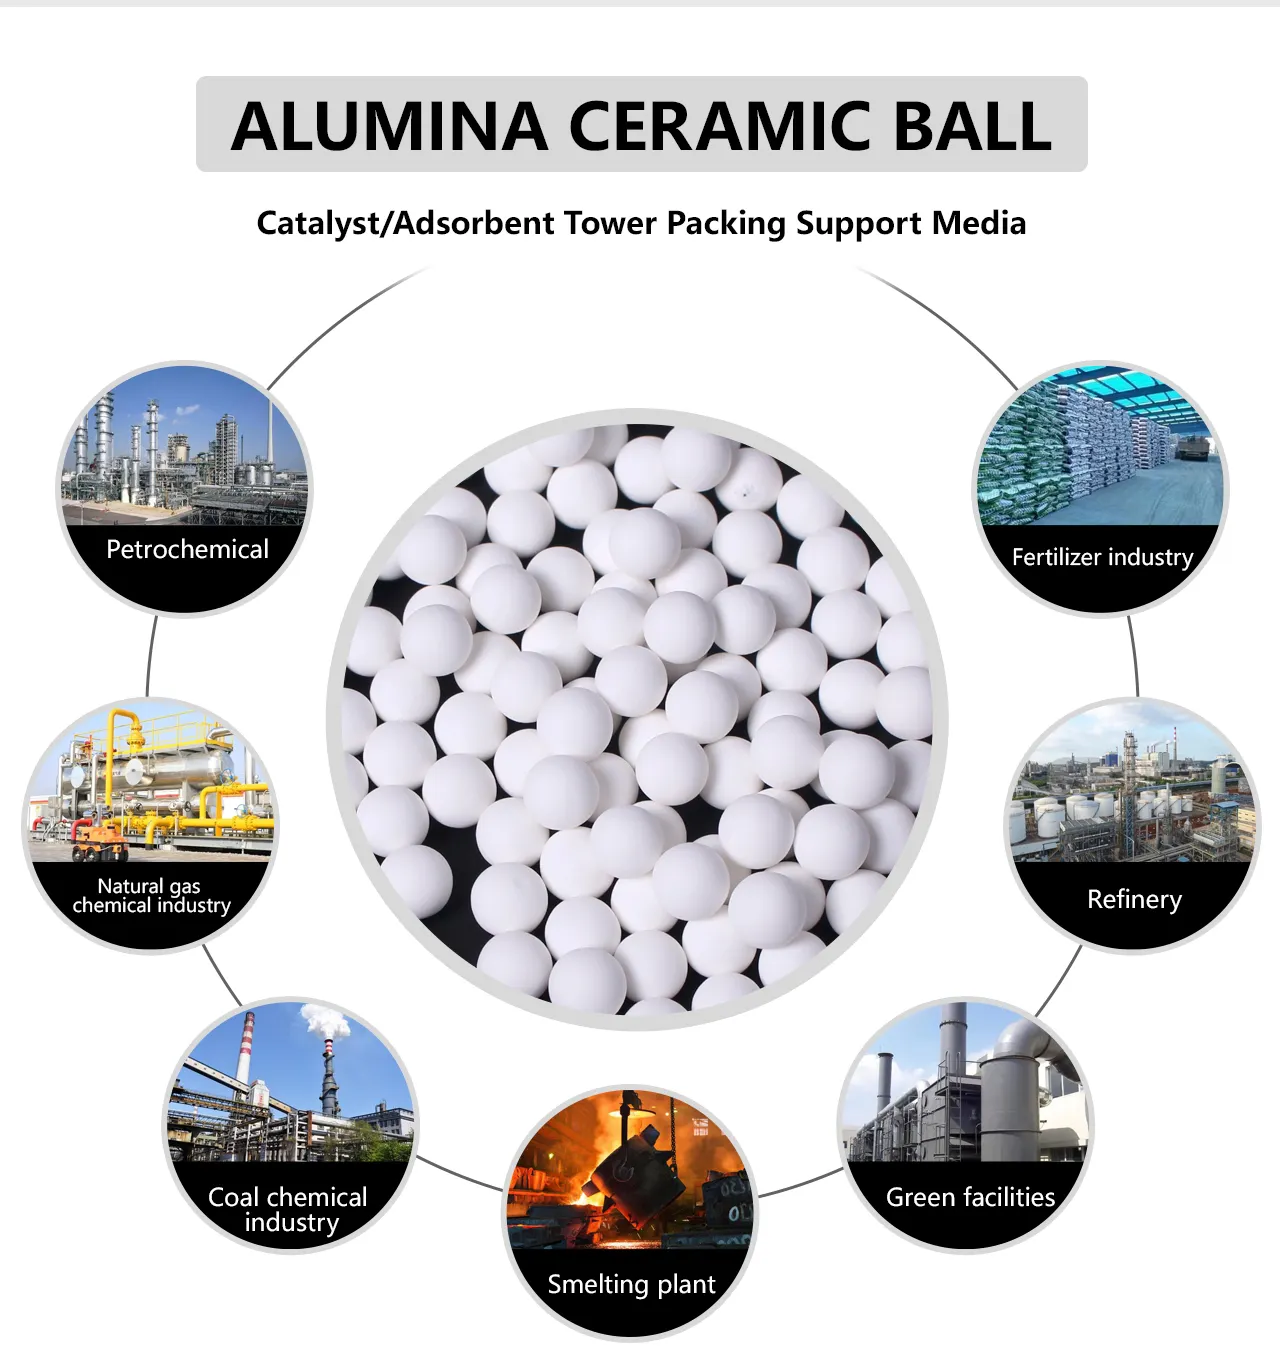 XINTAO bola keramik alumina indigo 3/4 "catalyst industri mendukung media kemasan bola keramik